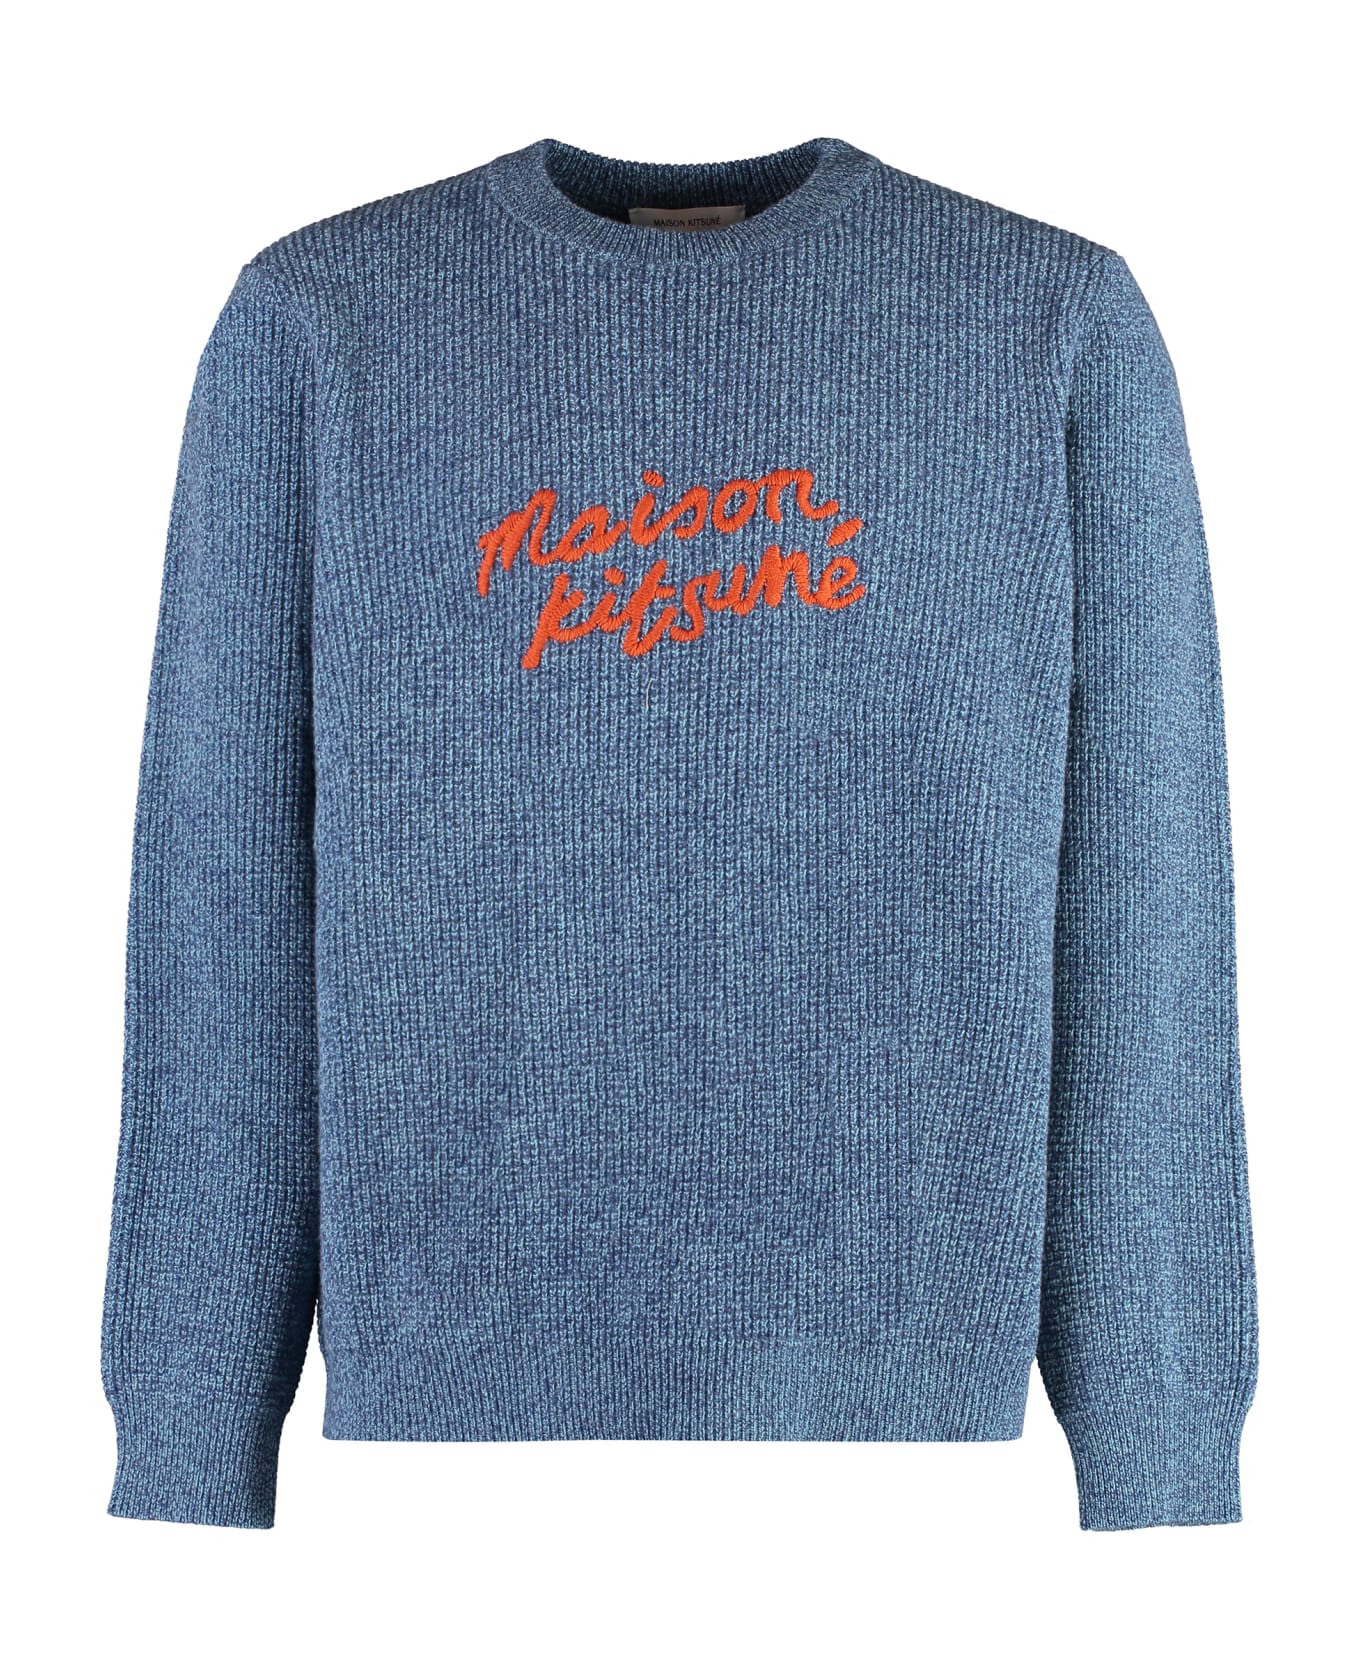 Maison Kitsuné Crew-neck Wool Sweater - blue ニットウェア